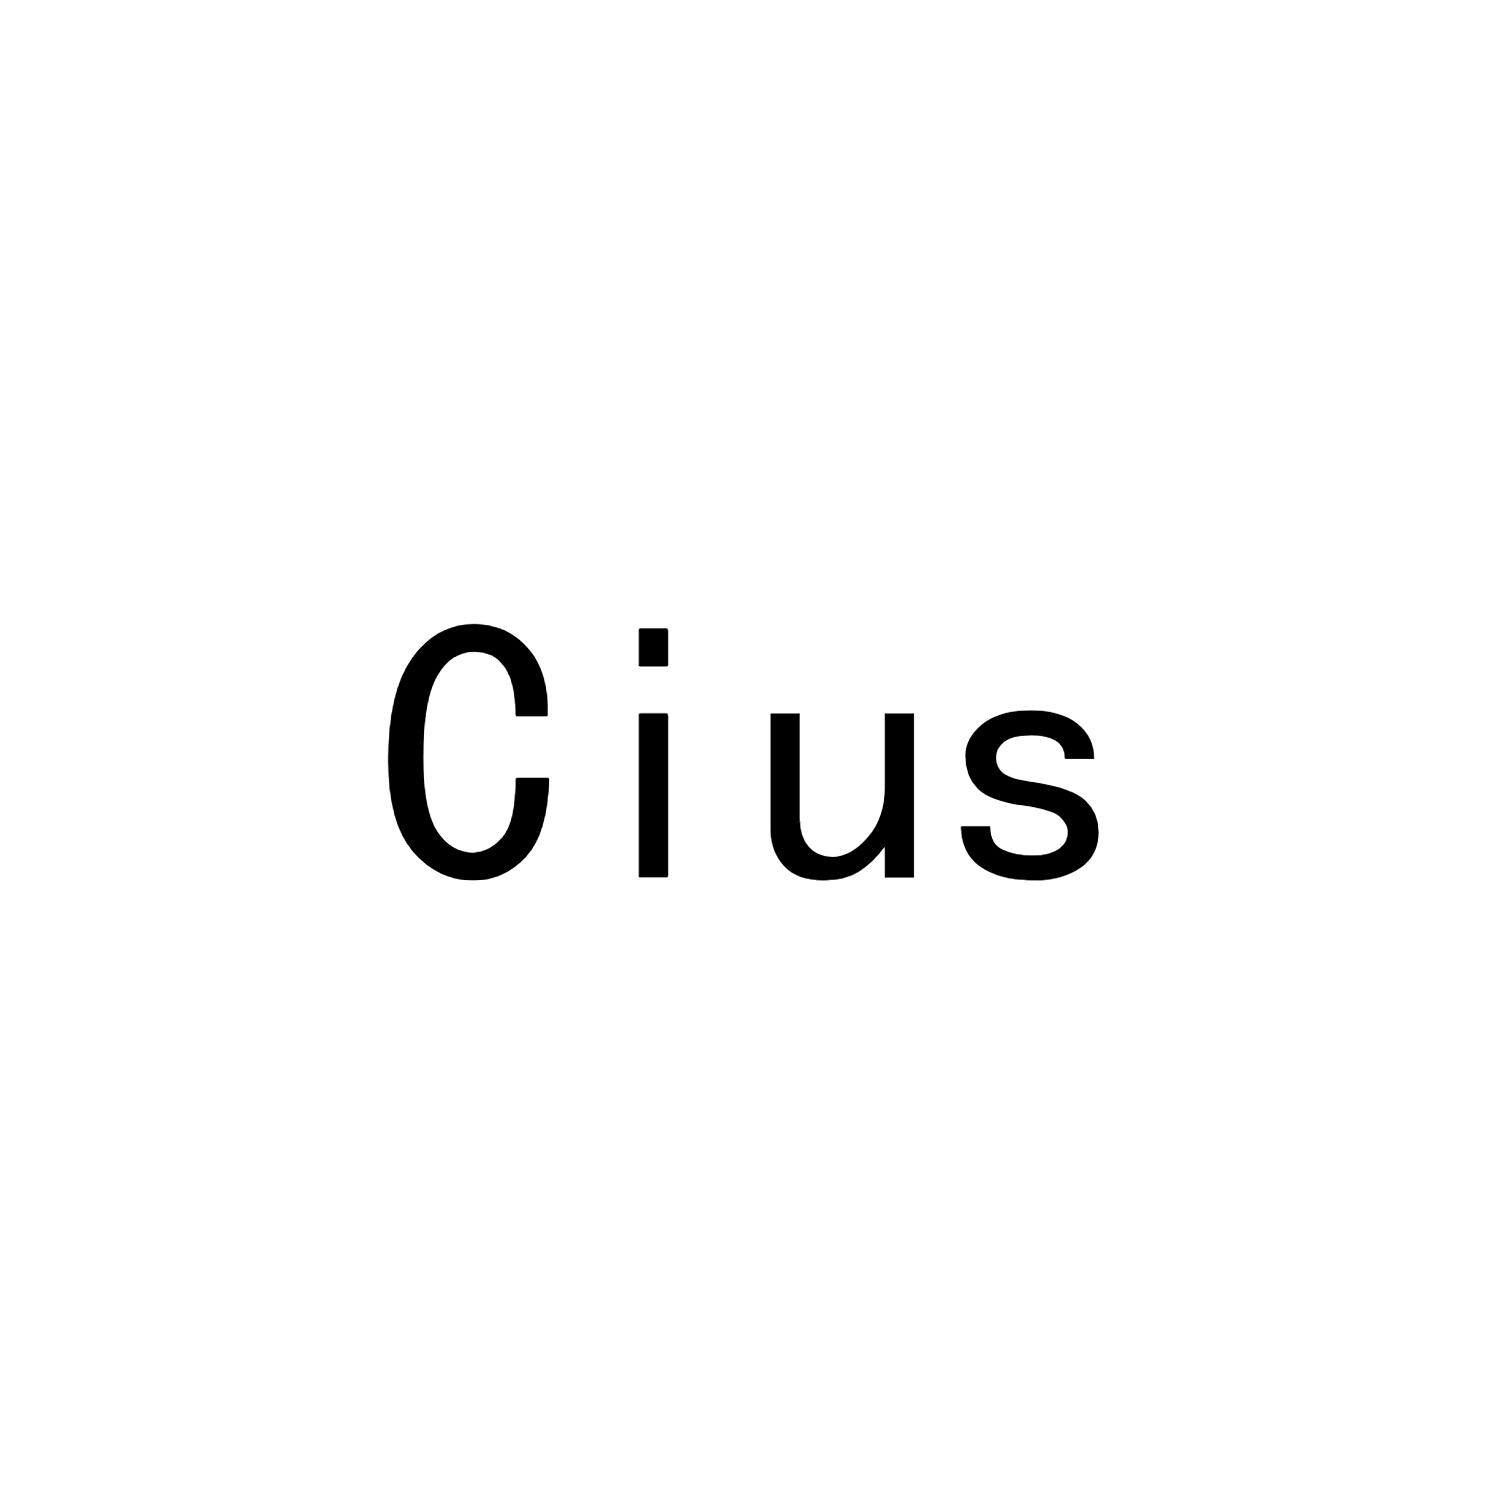 CIUS